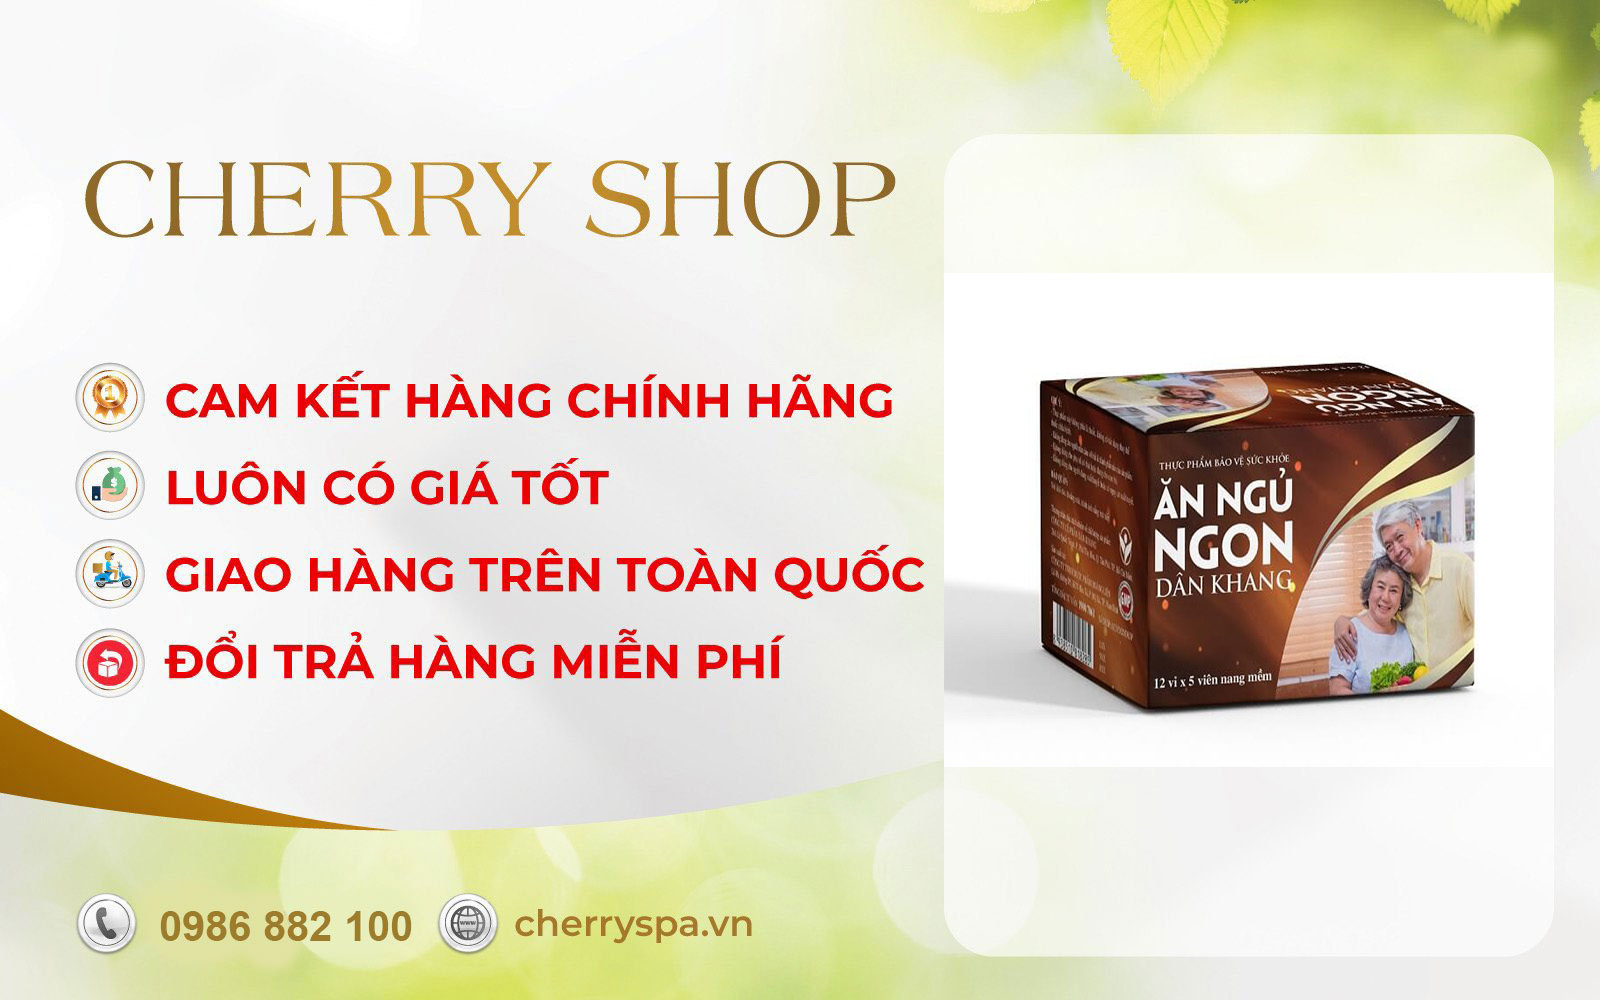 cherry spa hướng dẫn sử dụng Dân Khang